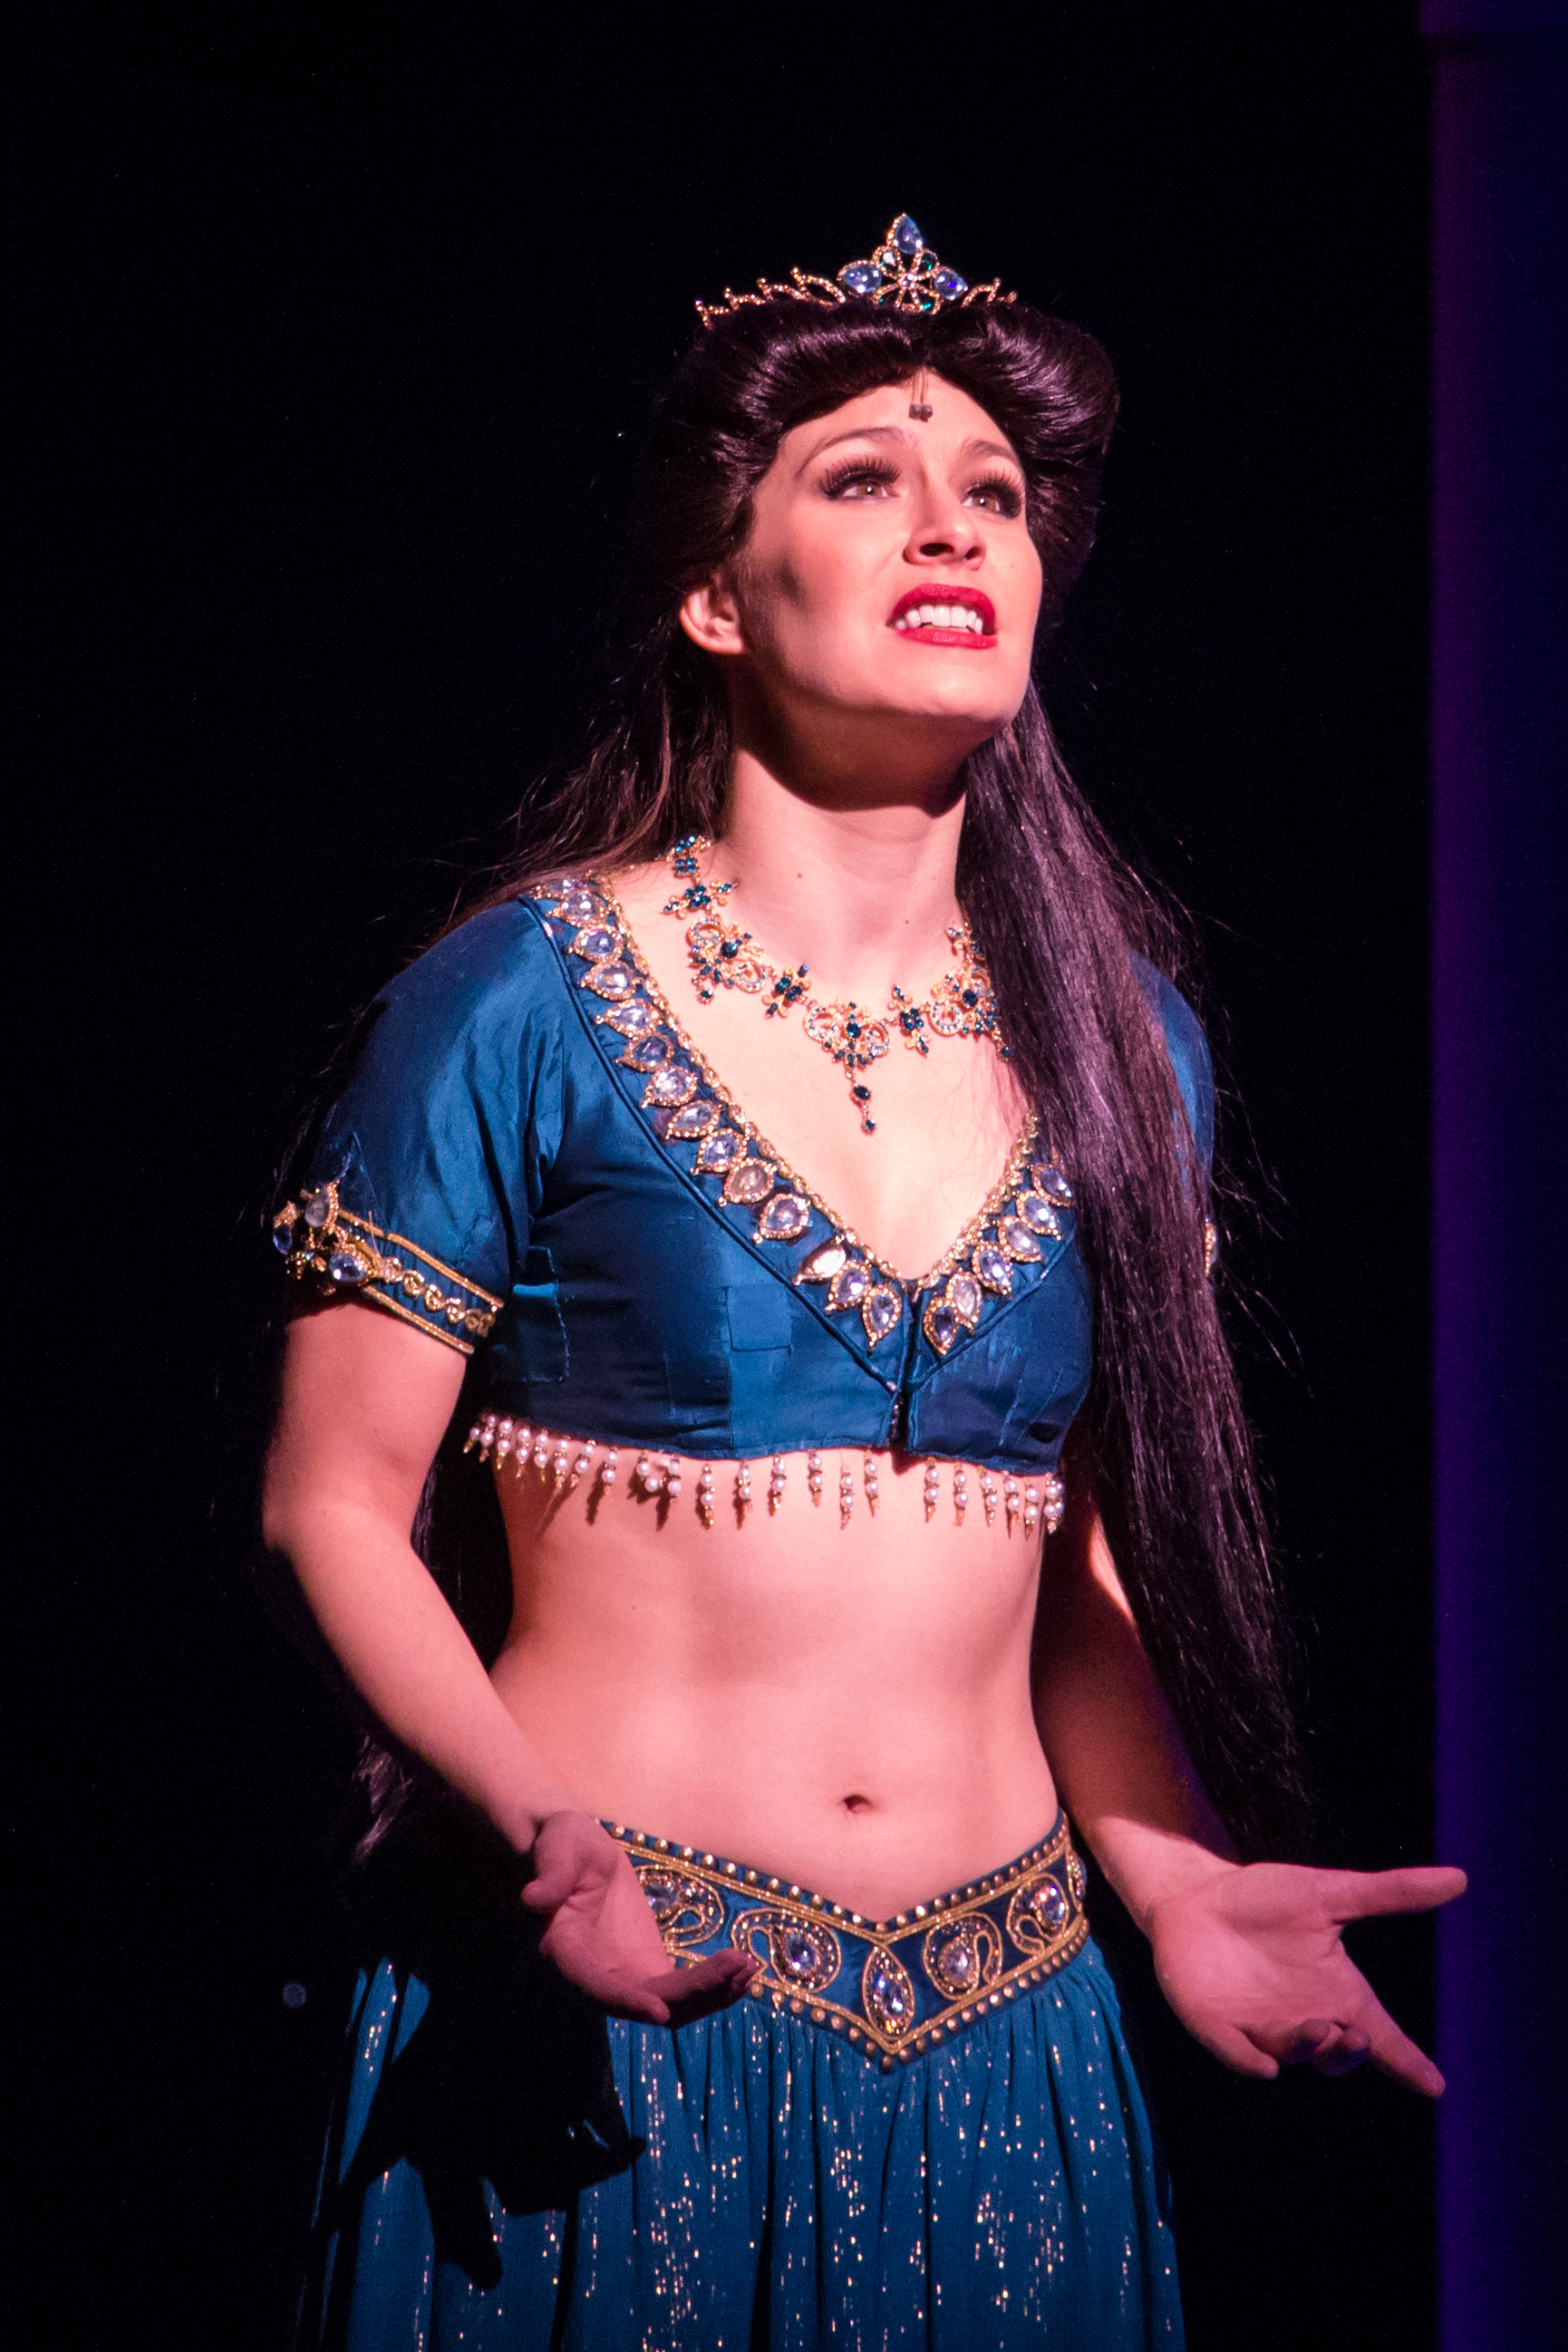 Jasmine (Aladdin) - Wikipedia